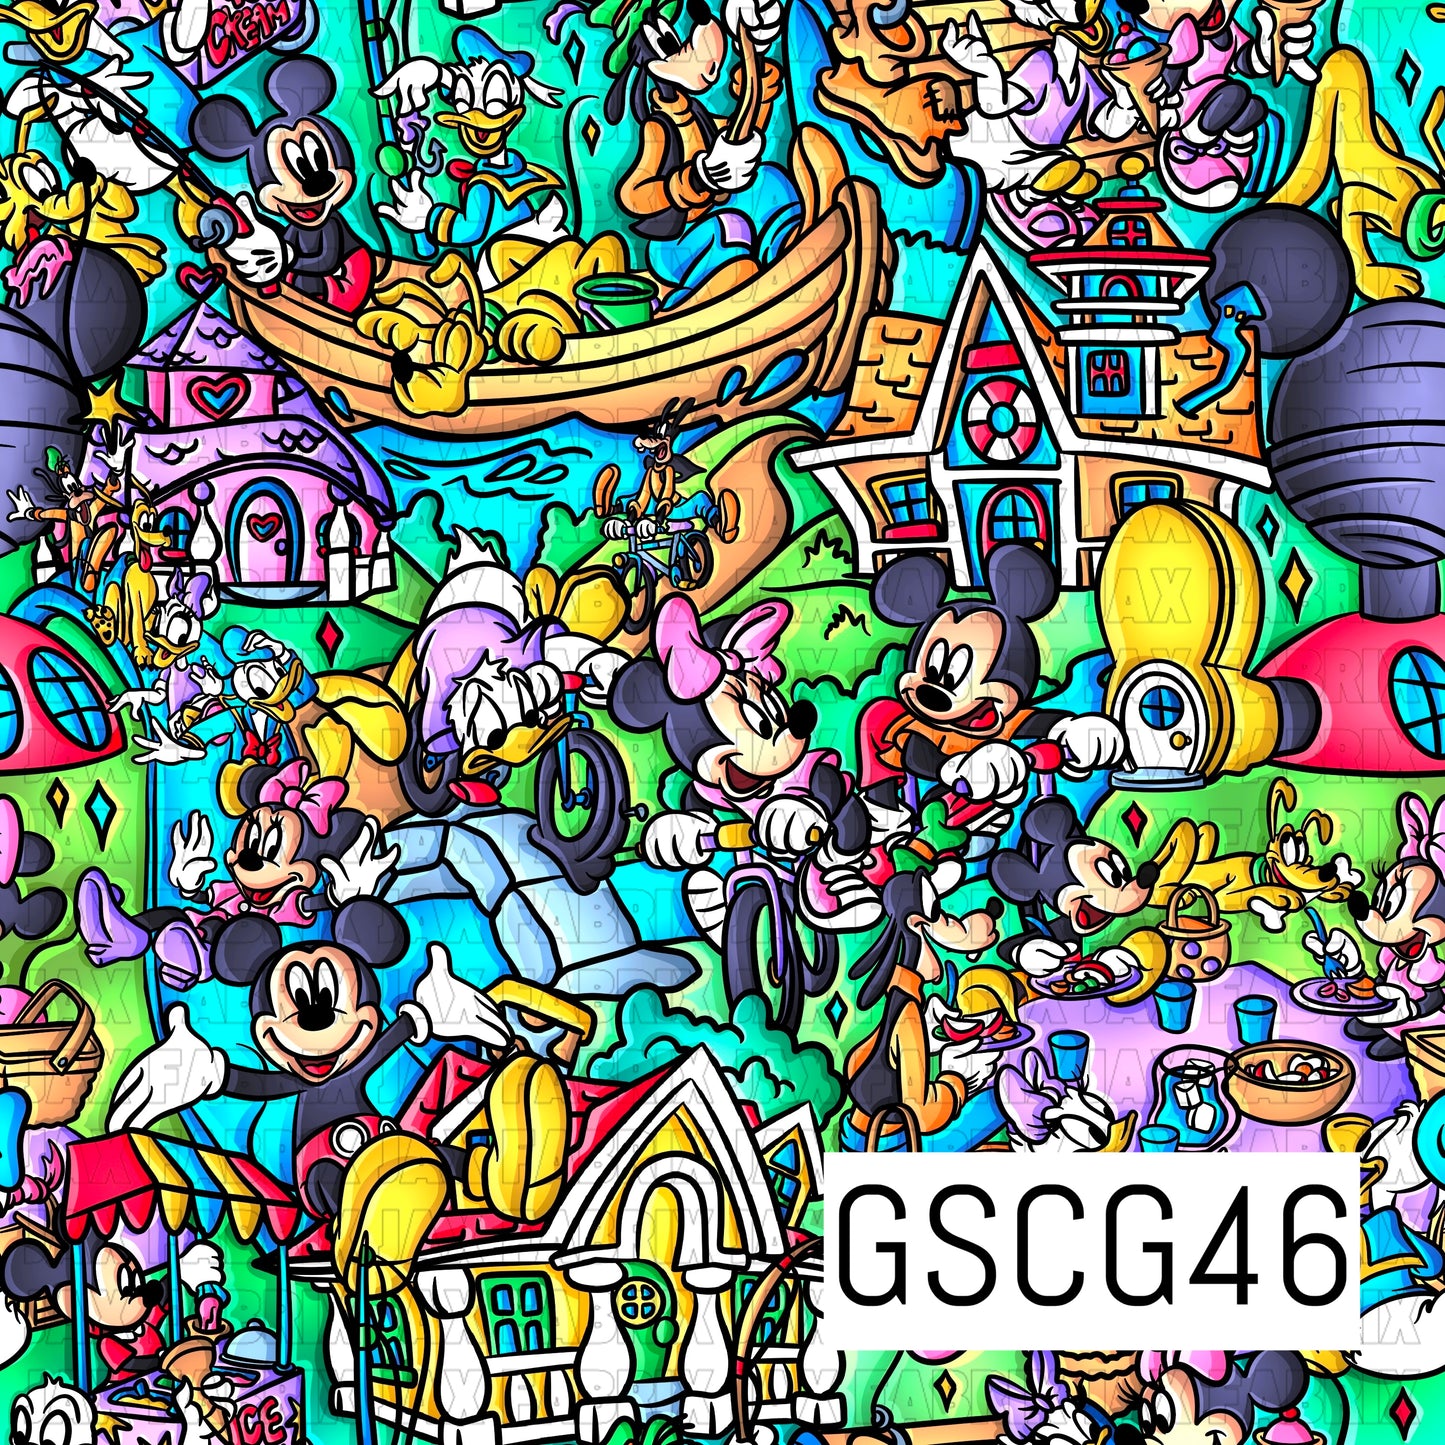 GSCG46